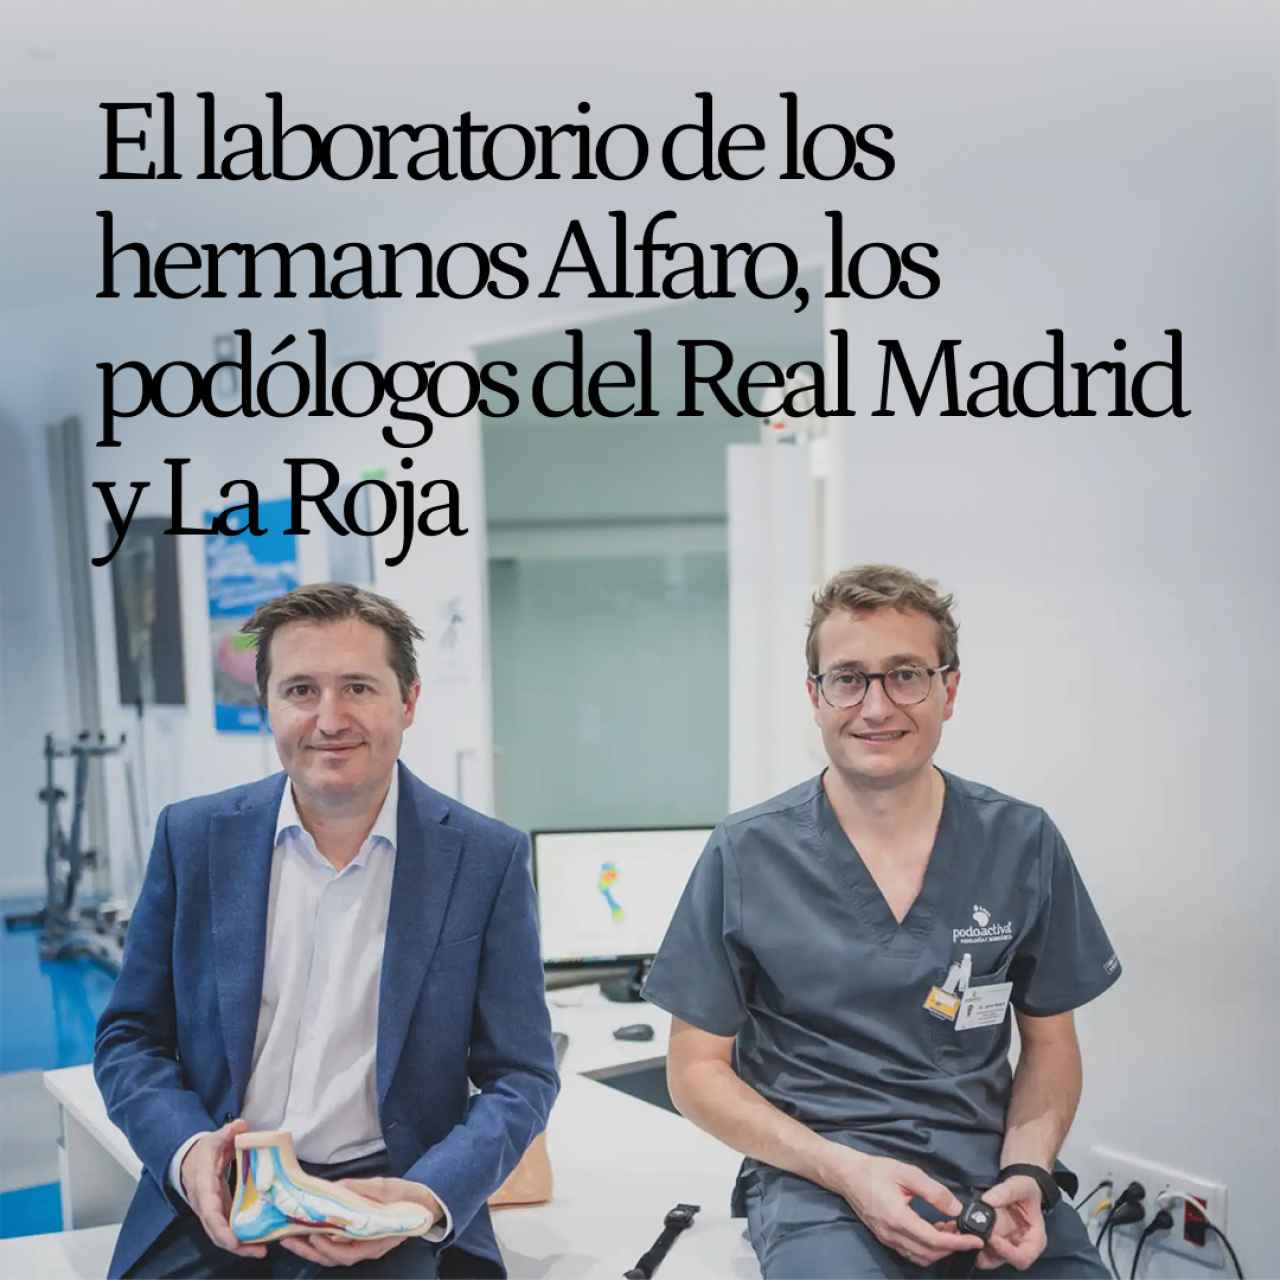 El laboratorio de los hermanos Alfaro, los podólogos del Real Madrid y la Roja que cuidan los pies de la élite del deporte